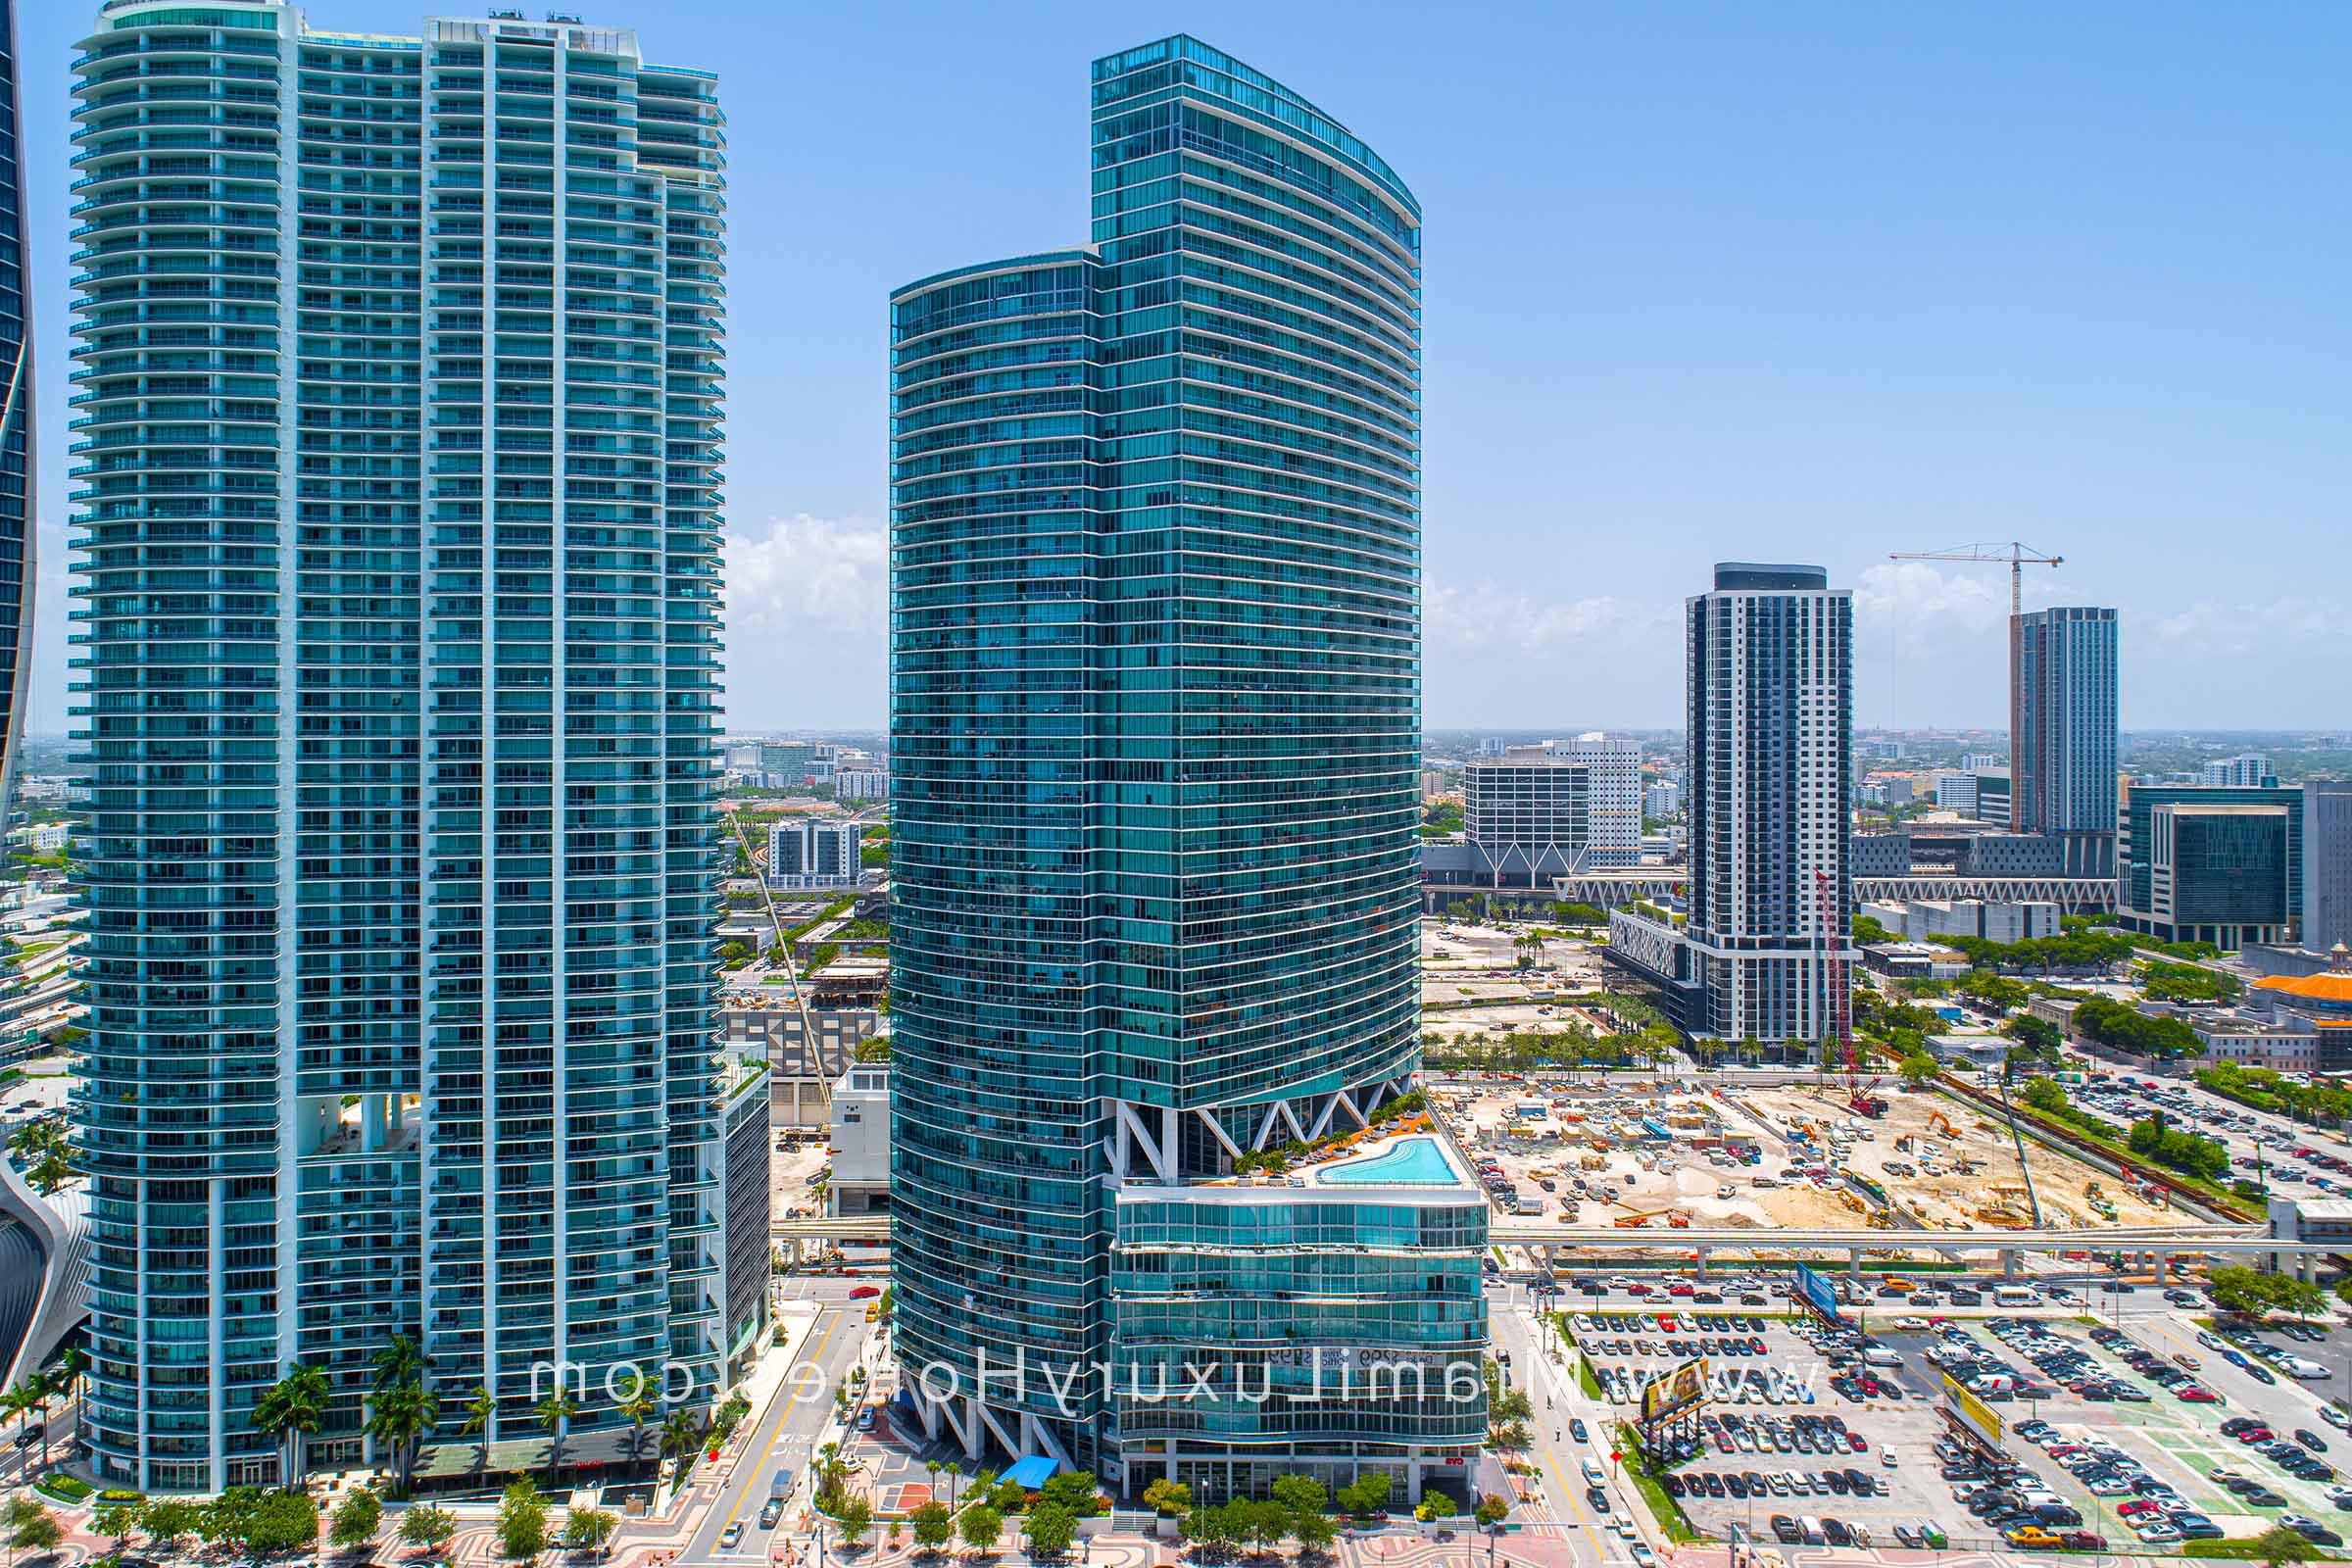 Marina Blue Condo Building in Miami